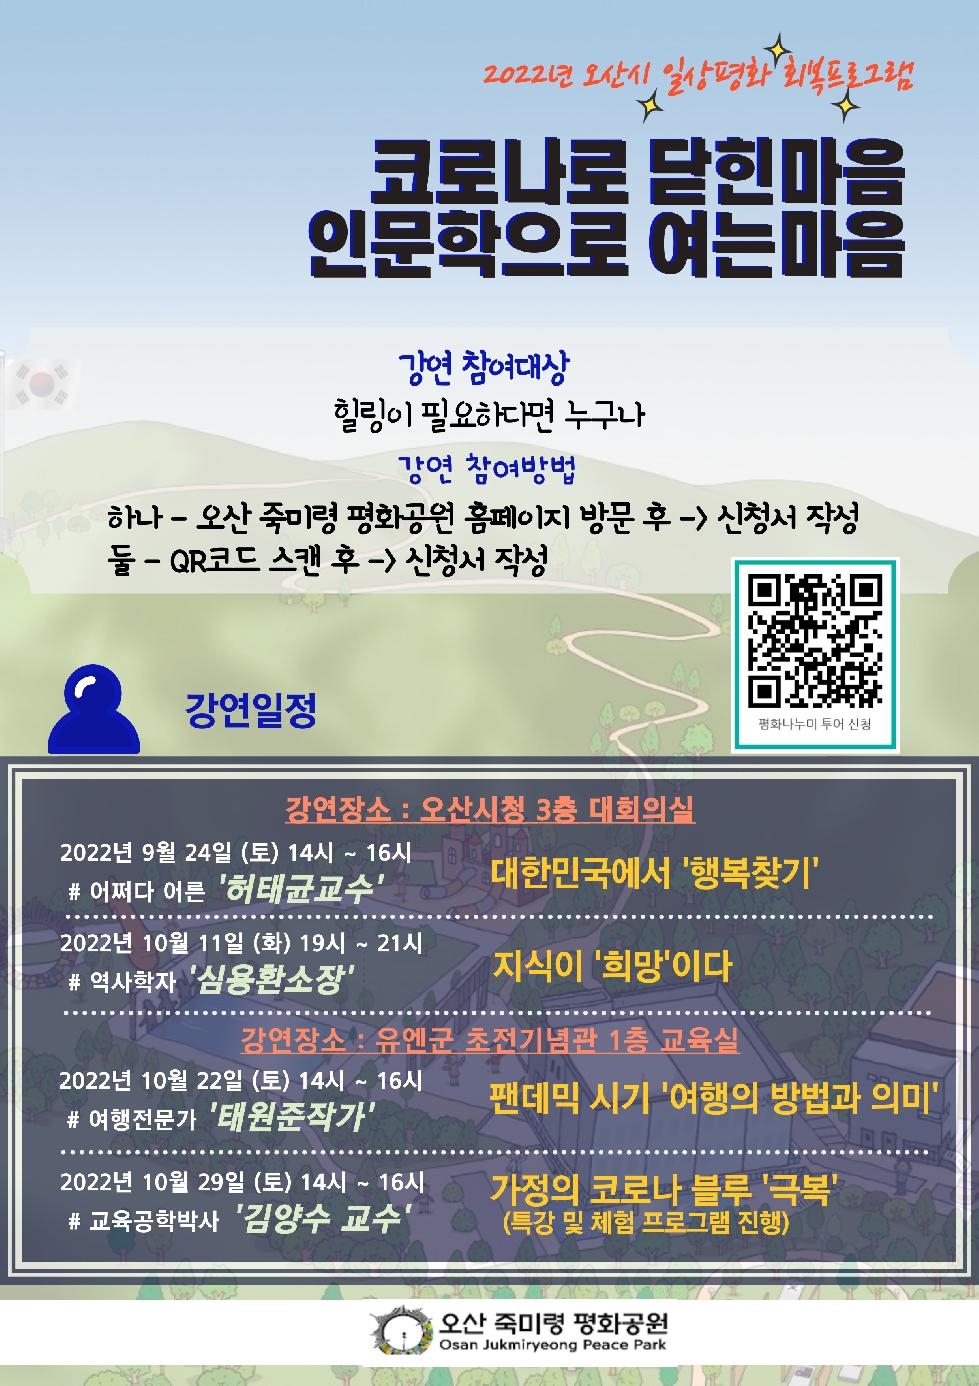 오산 죽미령 평화공원, 코로나 블루 극복 강연회 개최